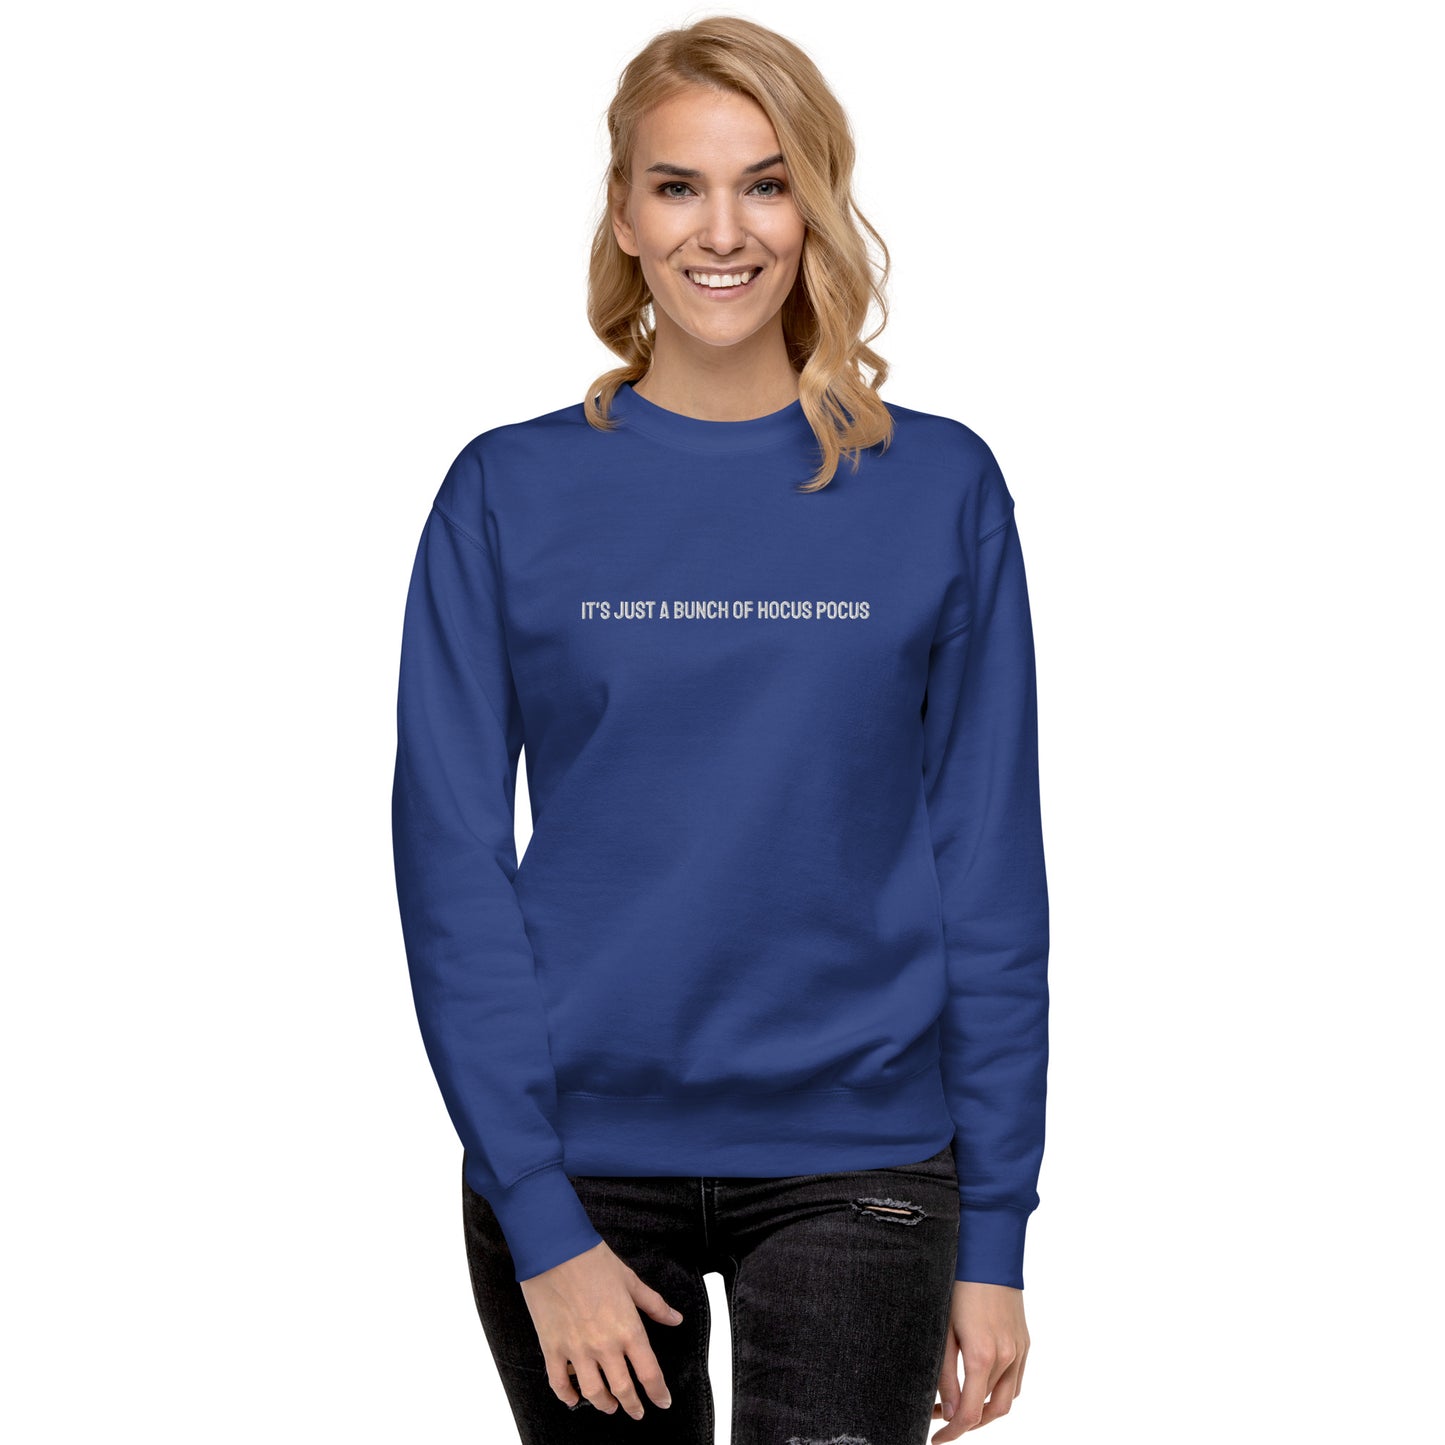 Hocus Pocus Simple Unisex Premium Sweatshirt